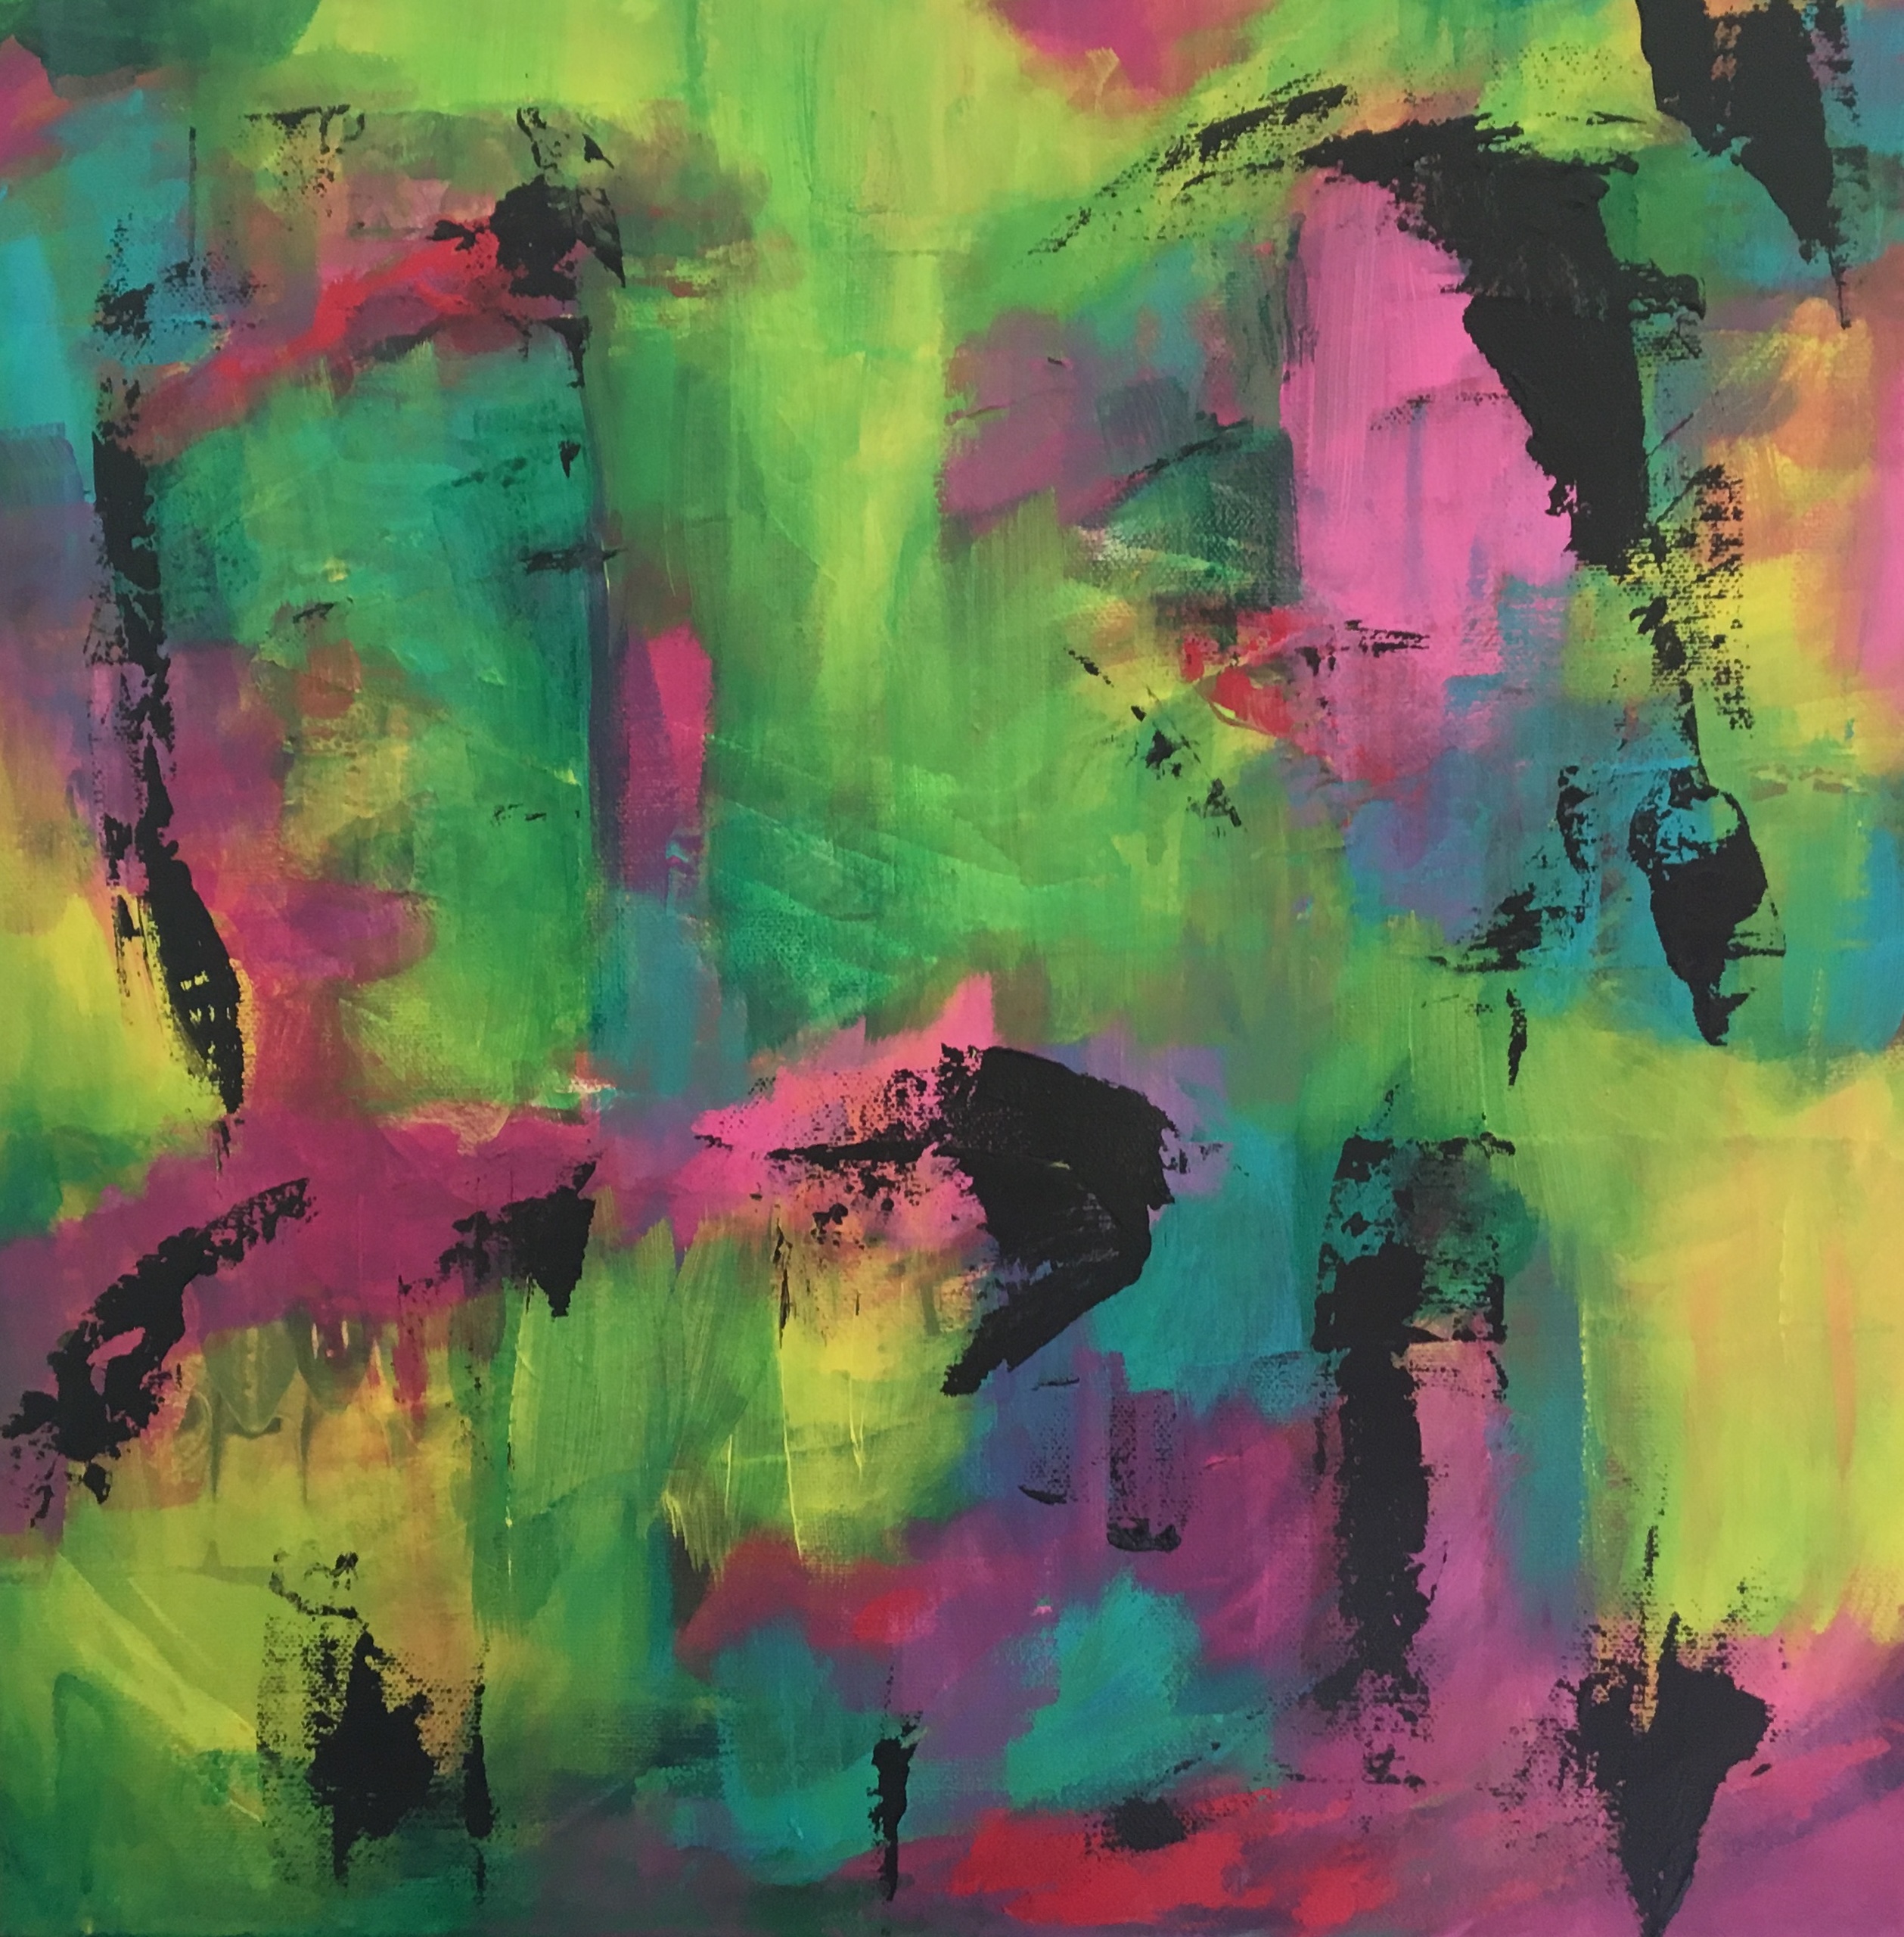 Abstrakt maleri i lime og pink farver, hvor ansigter toner frem i det abstrakte.